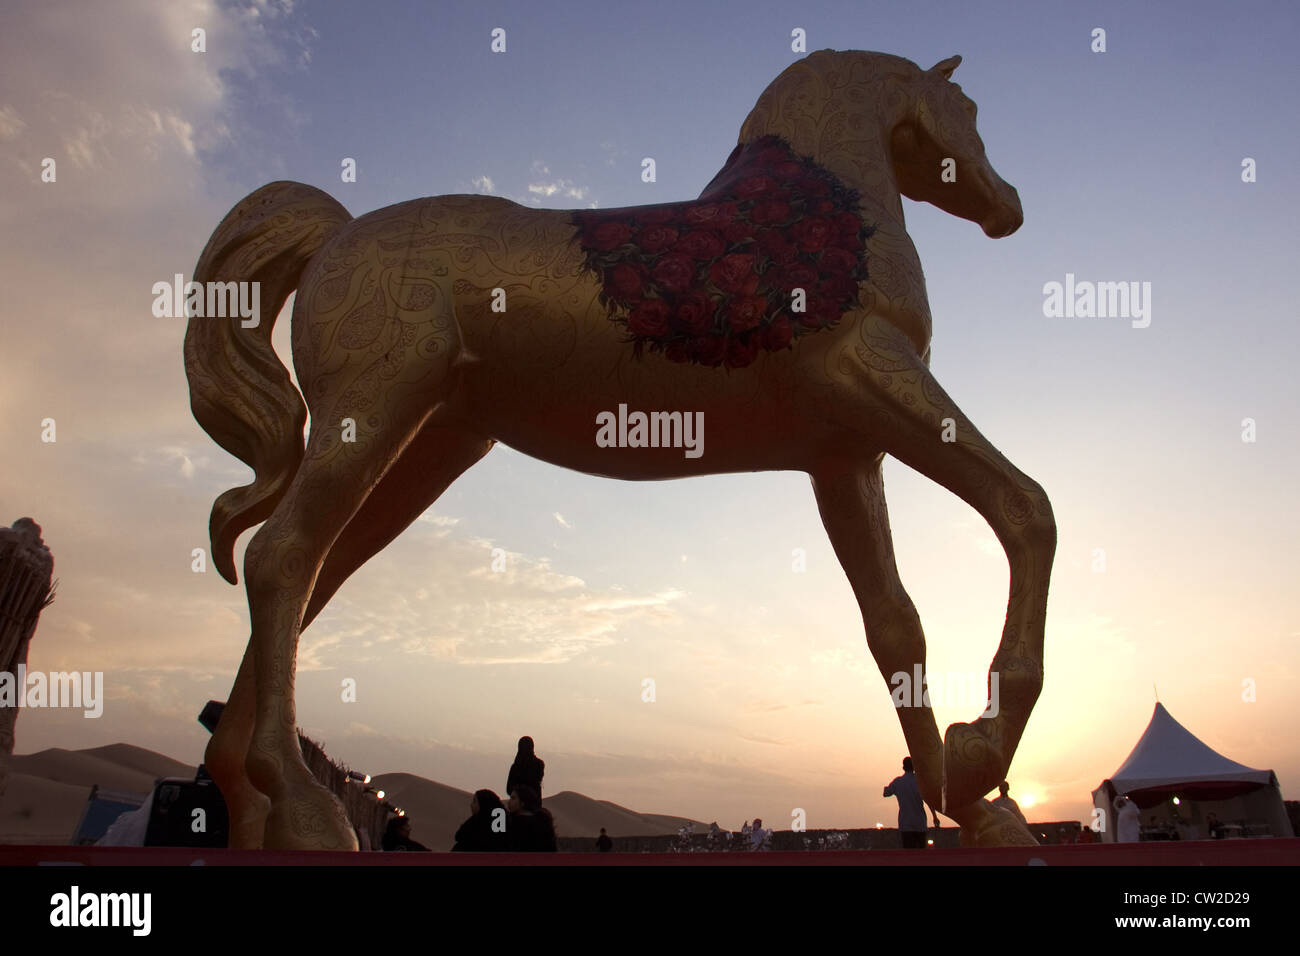 Dubaï, une sculpture de cheval dans la lumière du soir Banque D'Images